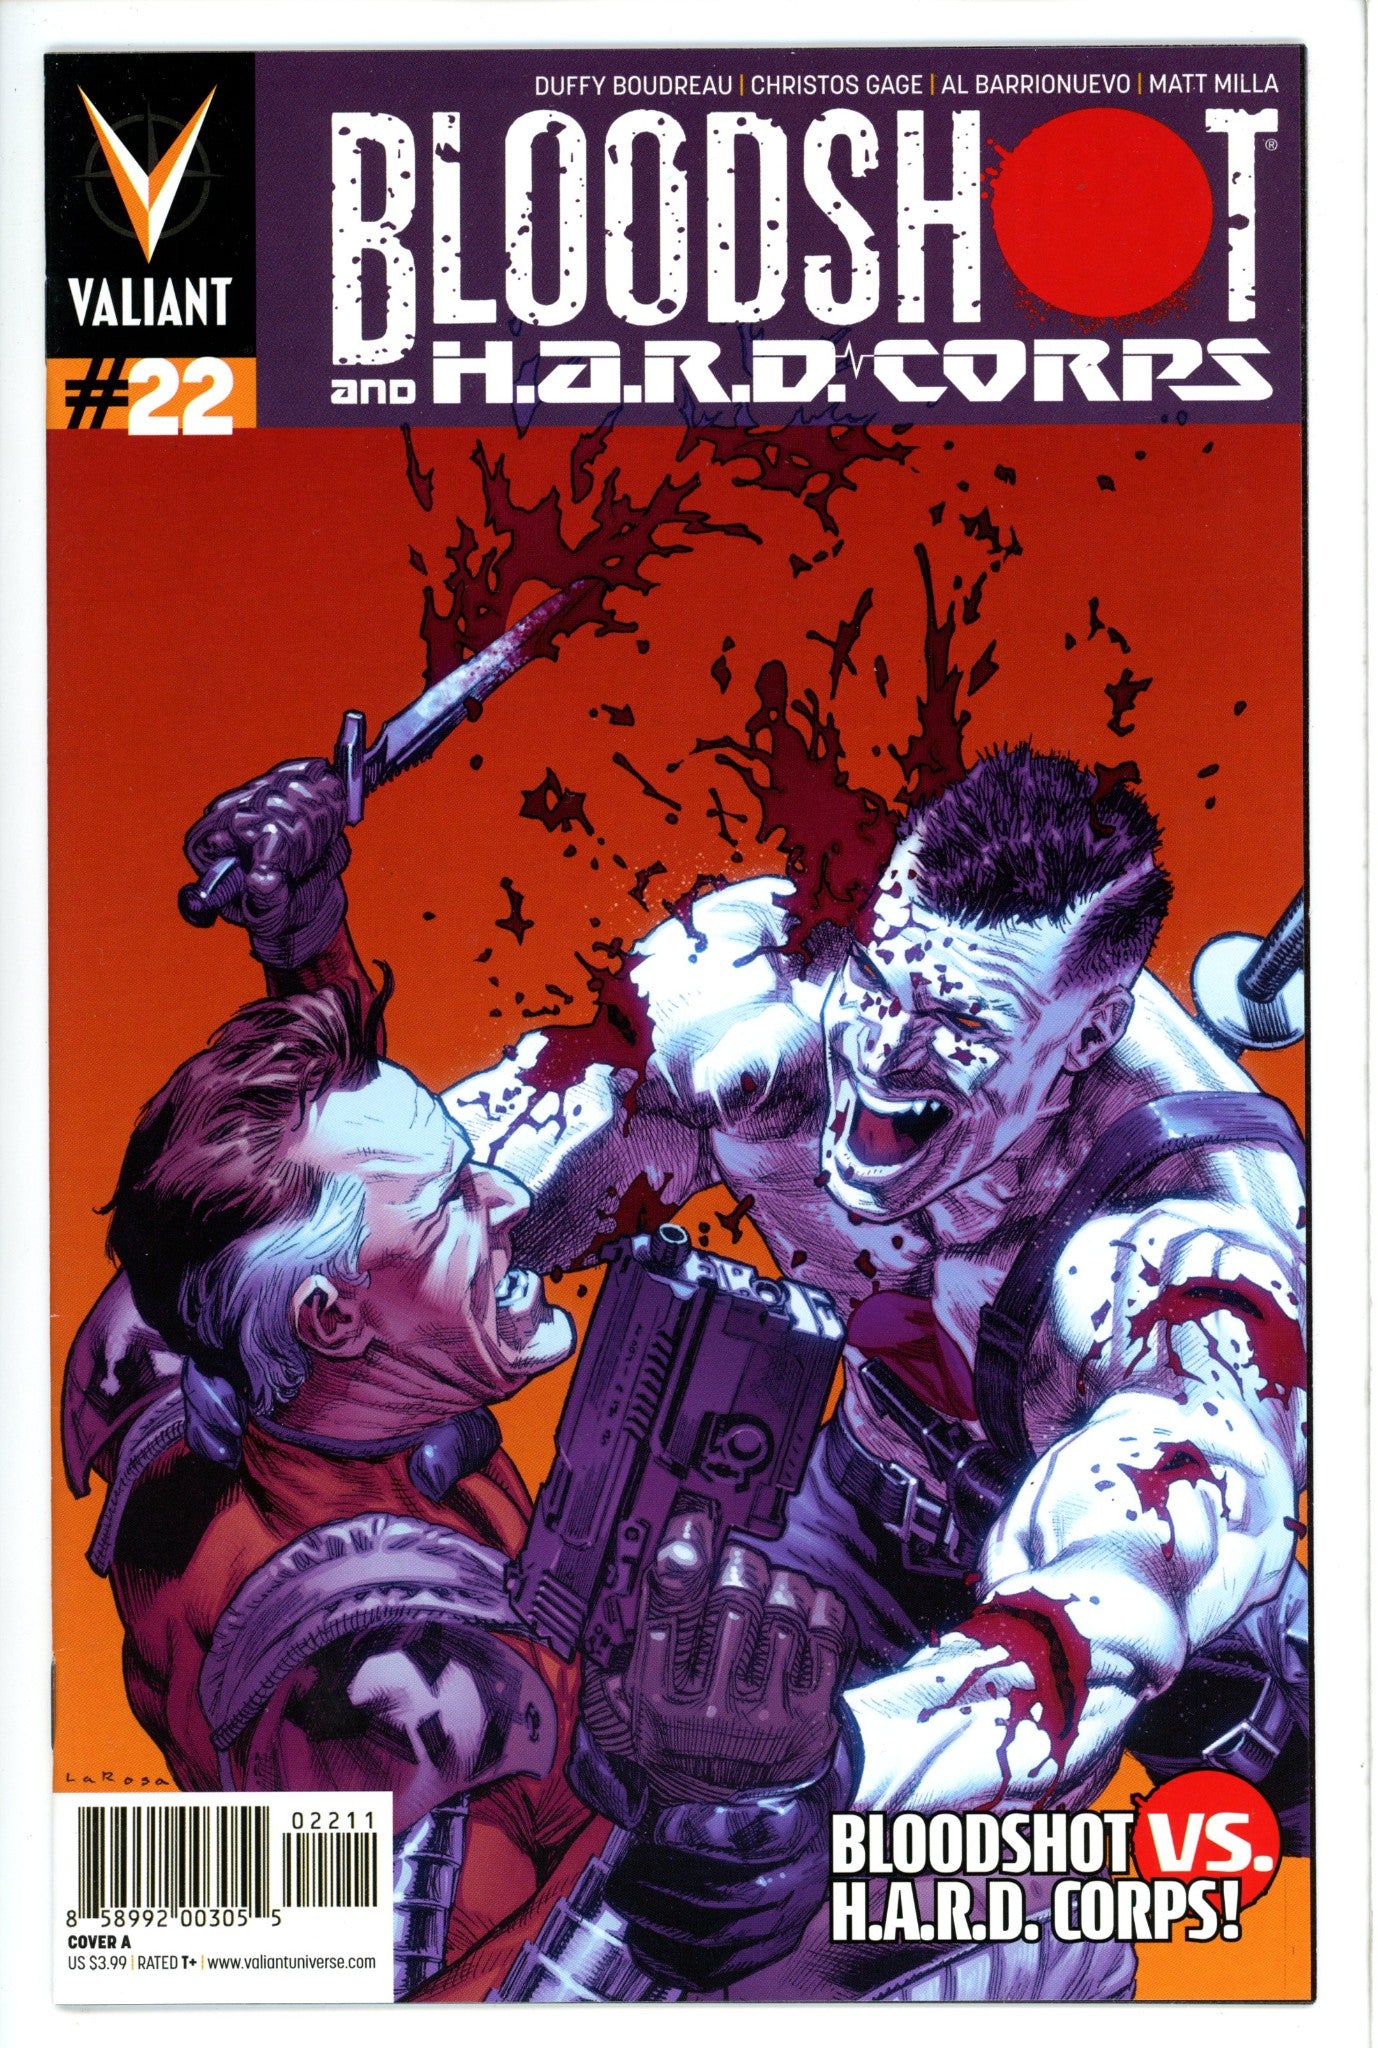 Bloodshot and H.A.R.D.Corps 22-Valiant Entertainment-CaptCan Comics Inc